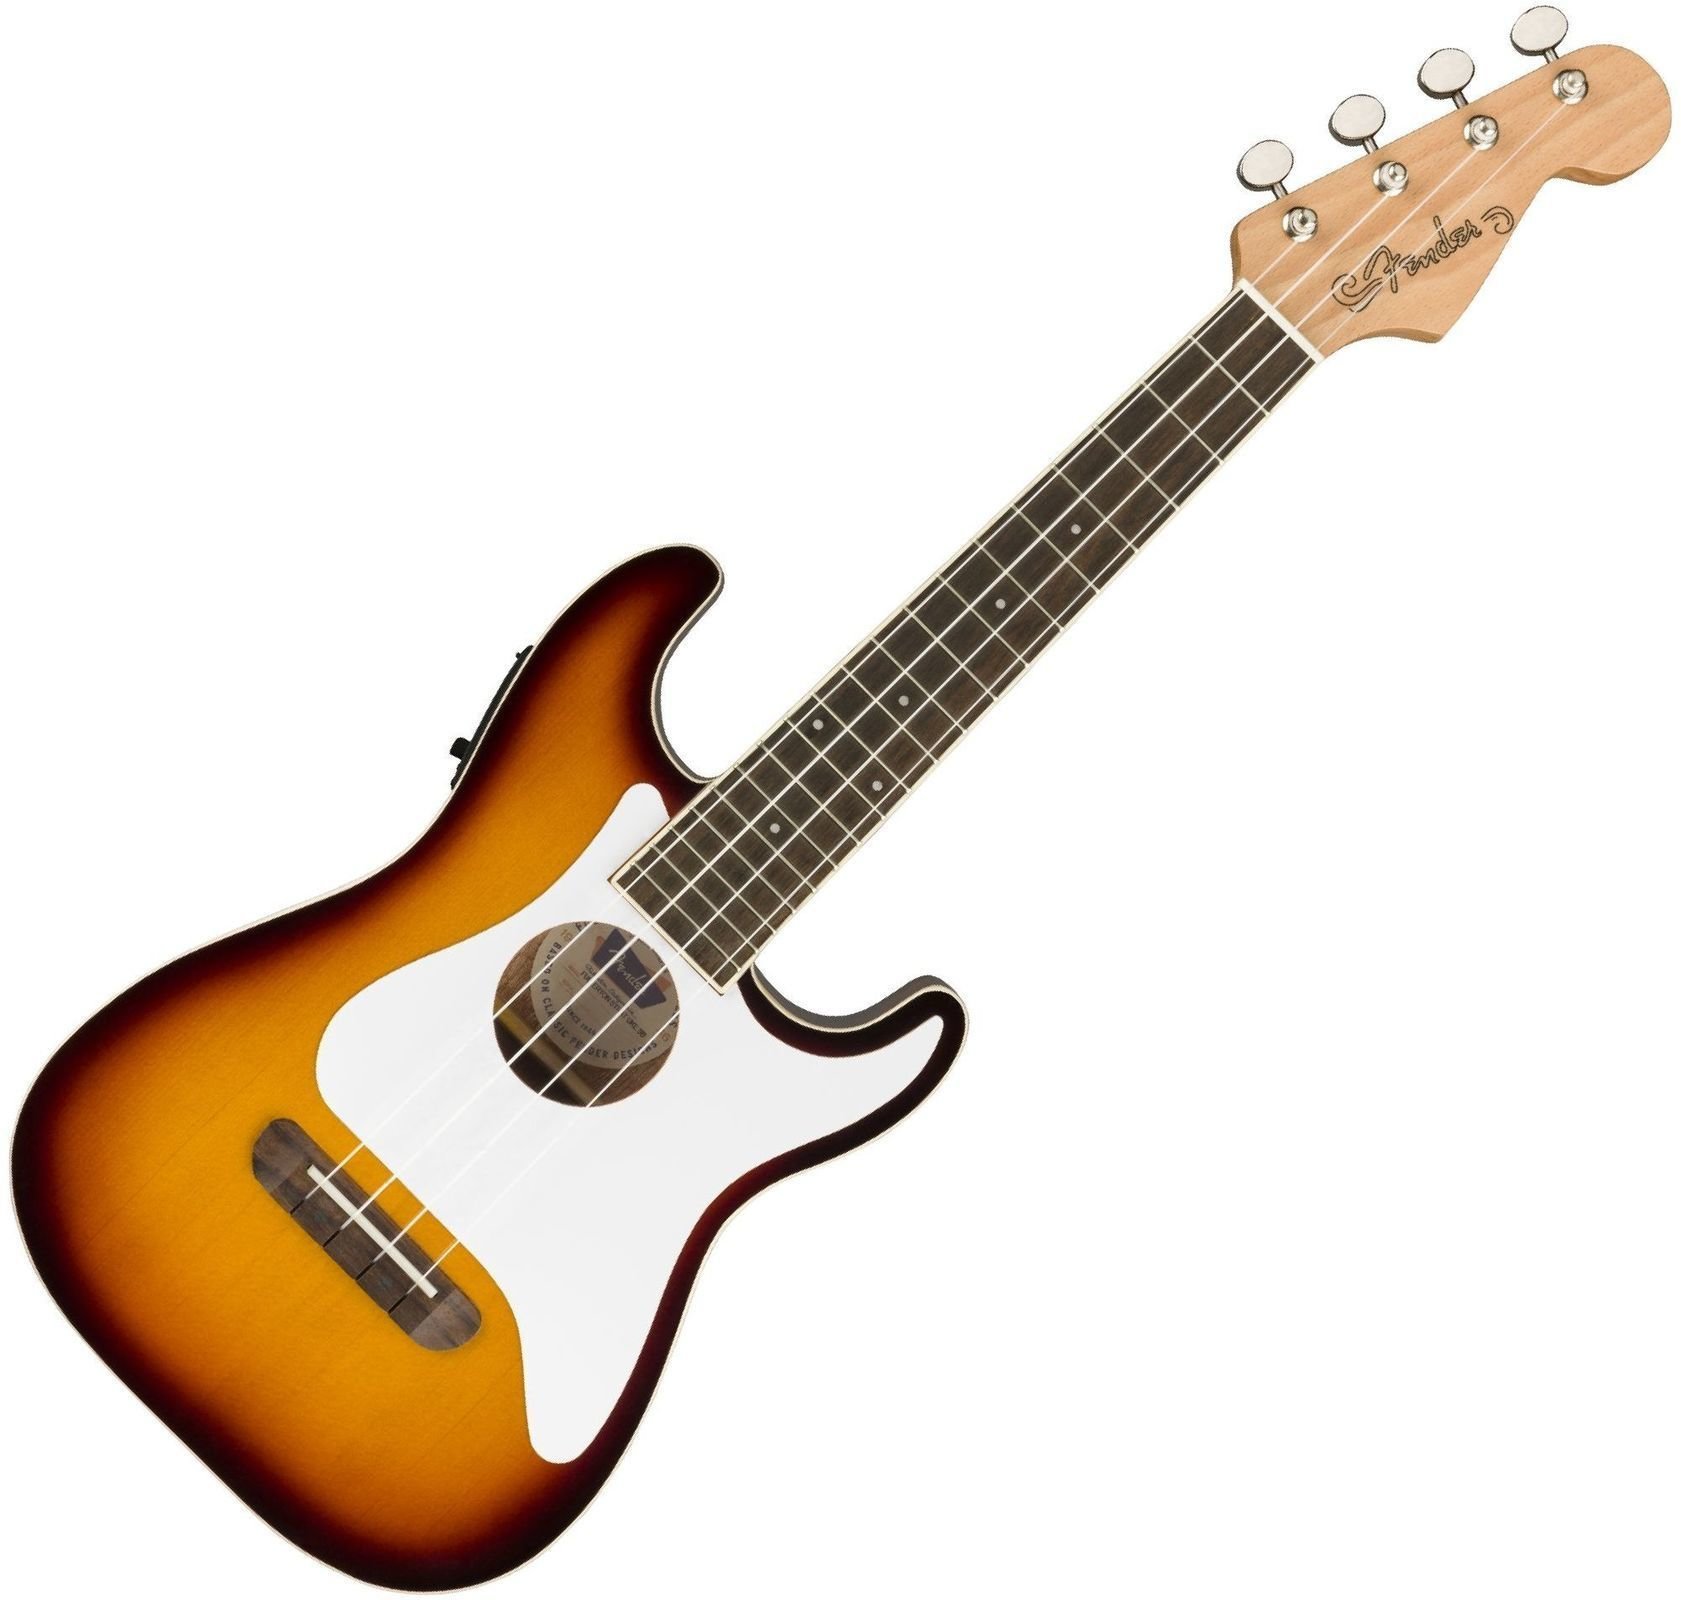 Fender Fullerton Stratocaster Ukulele concert Sunburst